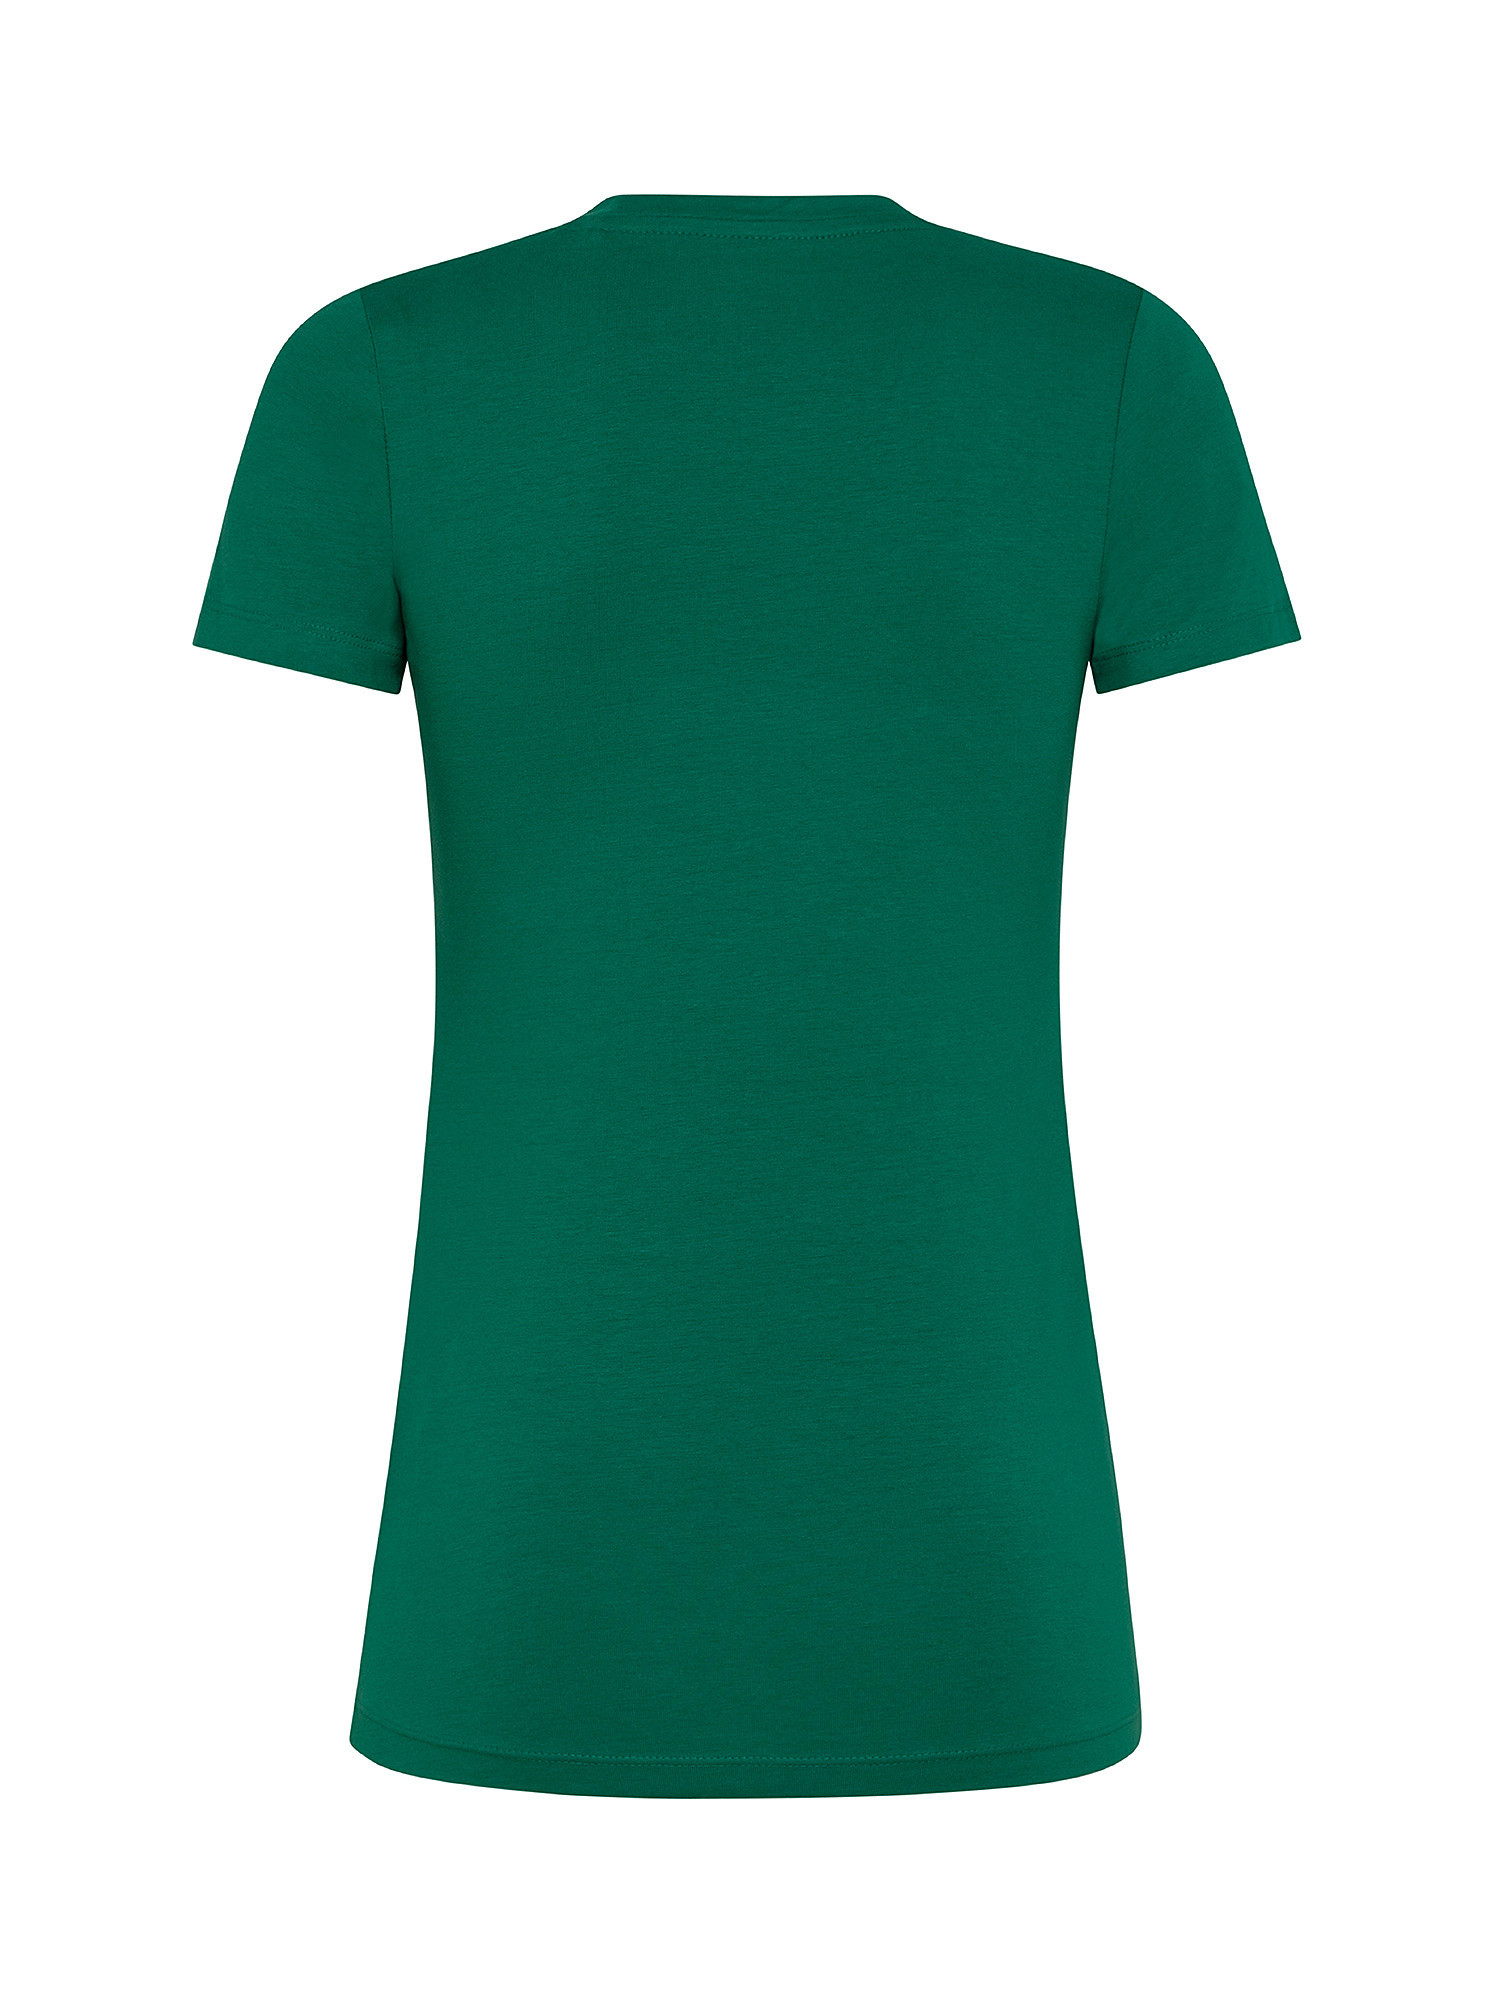 T-shirt Violette in cotone, Verde, large image number 1